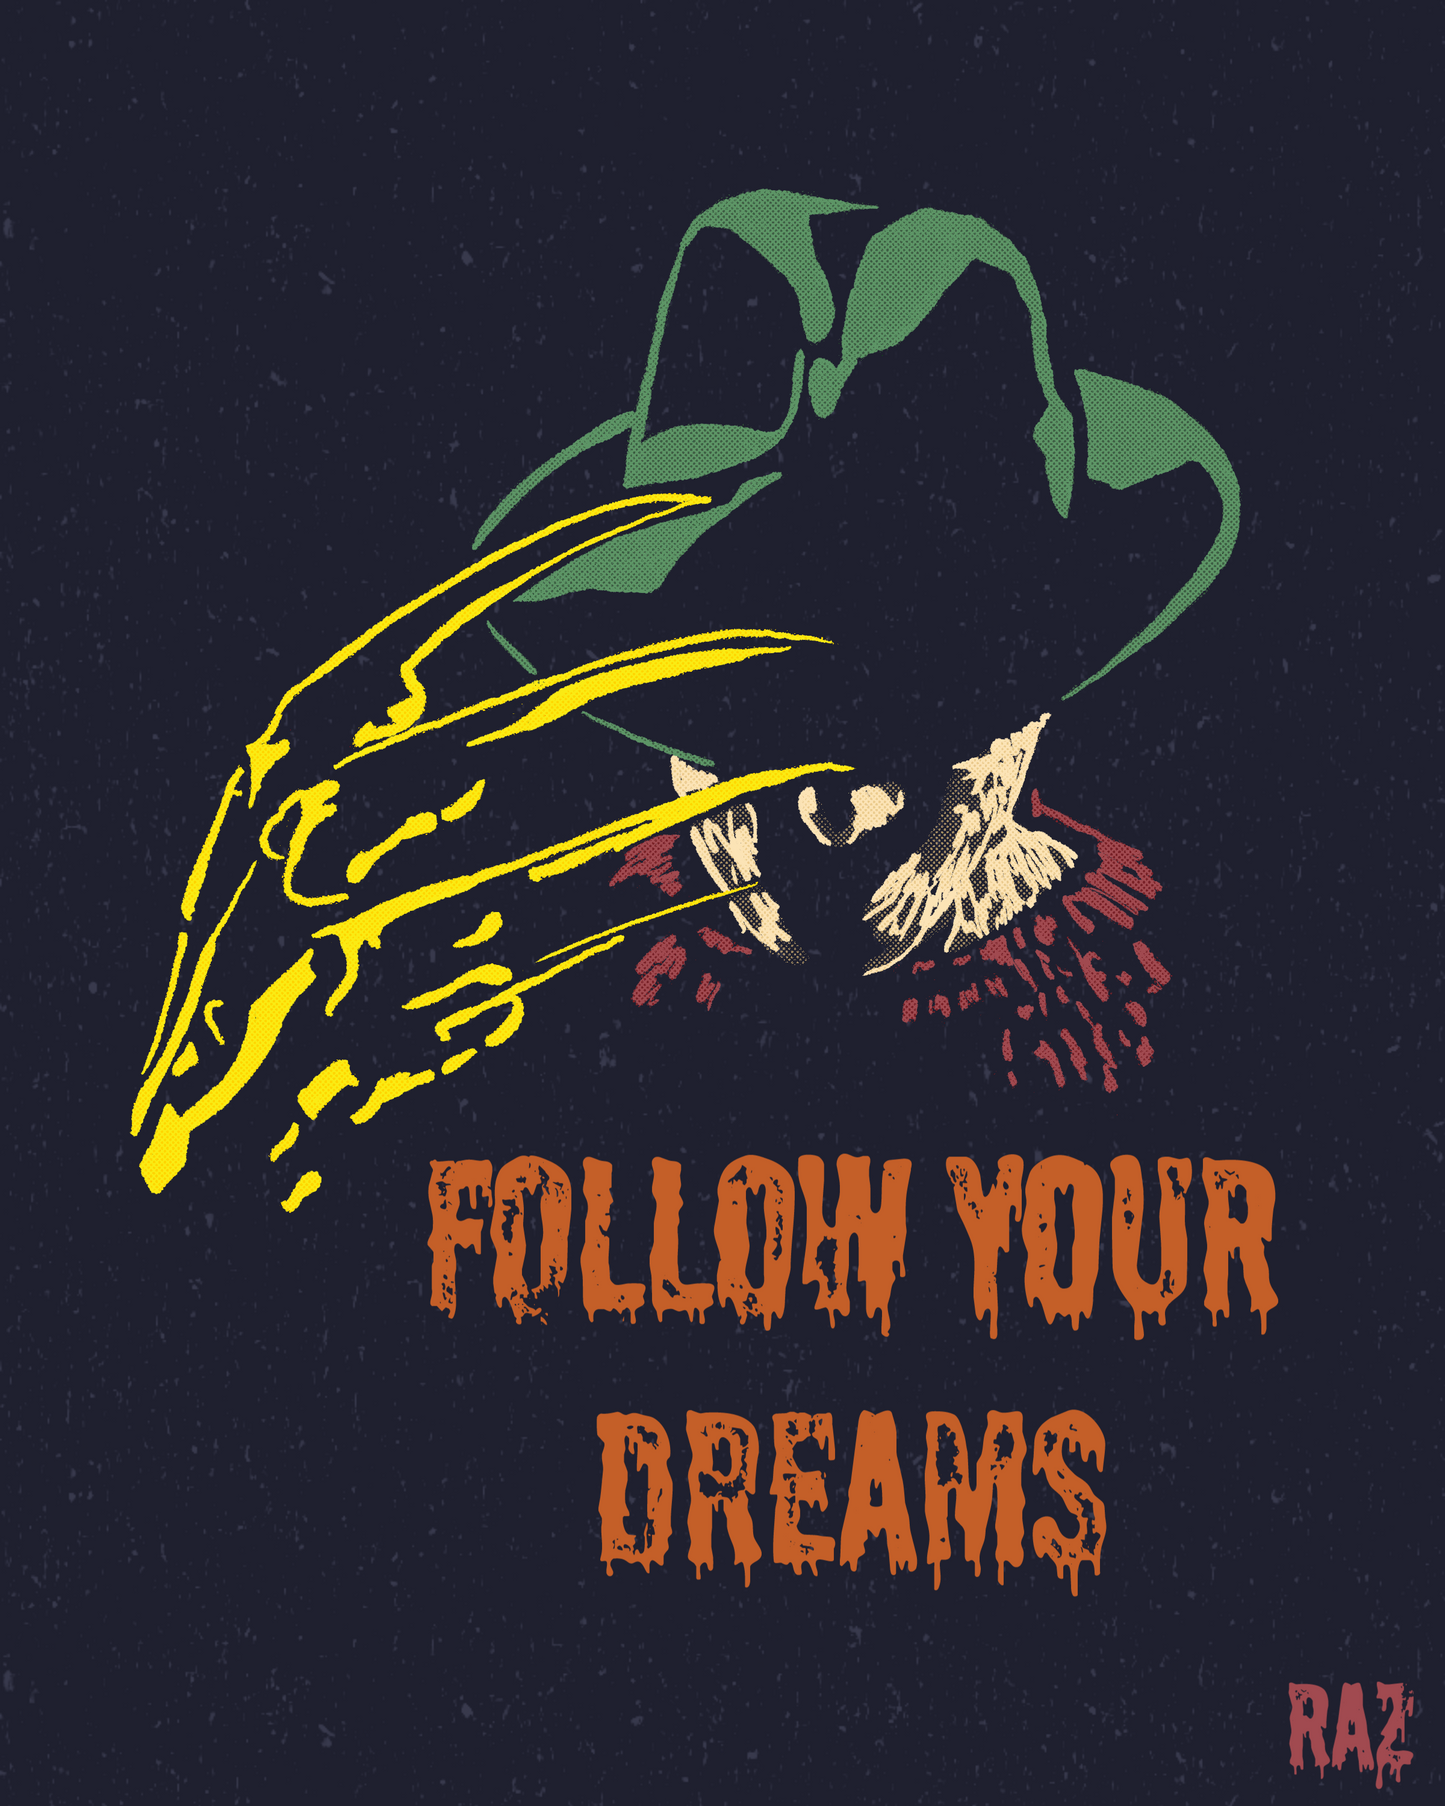 Follow Your Dreams Unisex T-Shirt